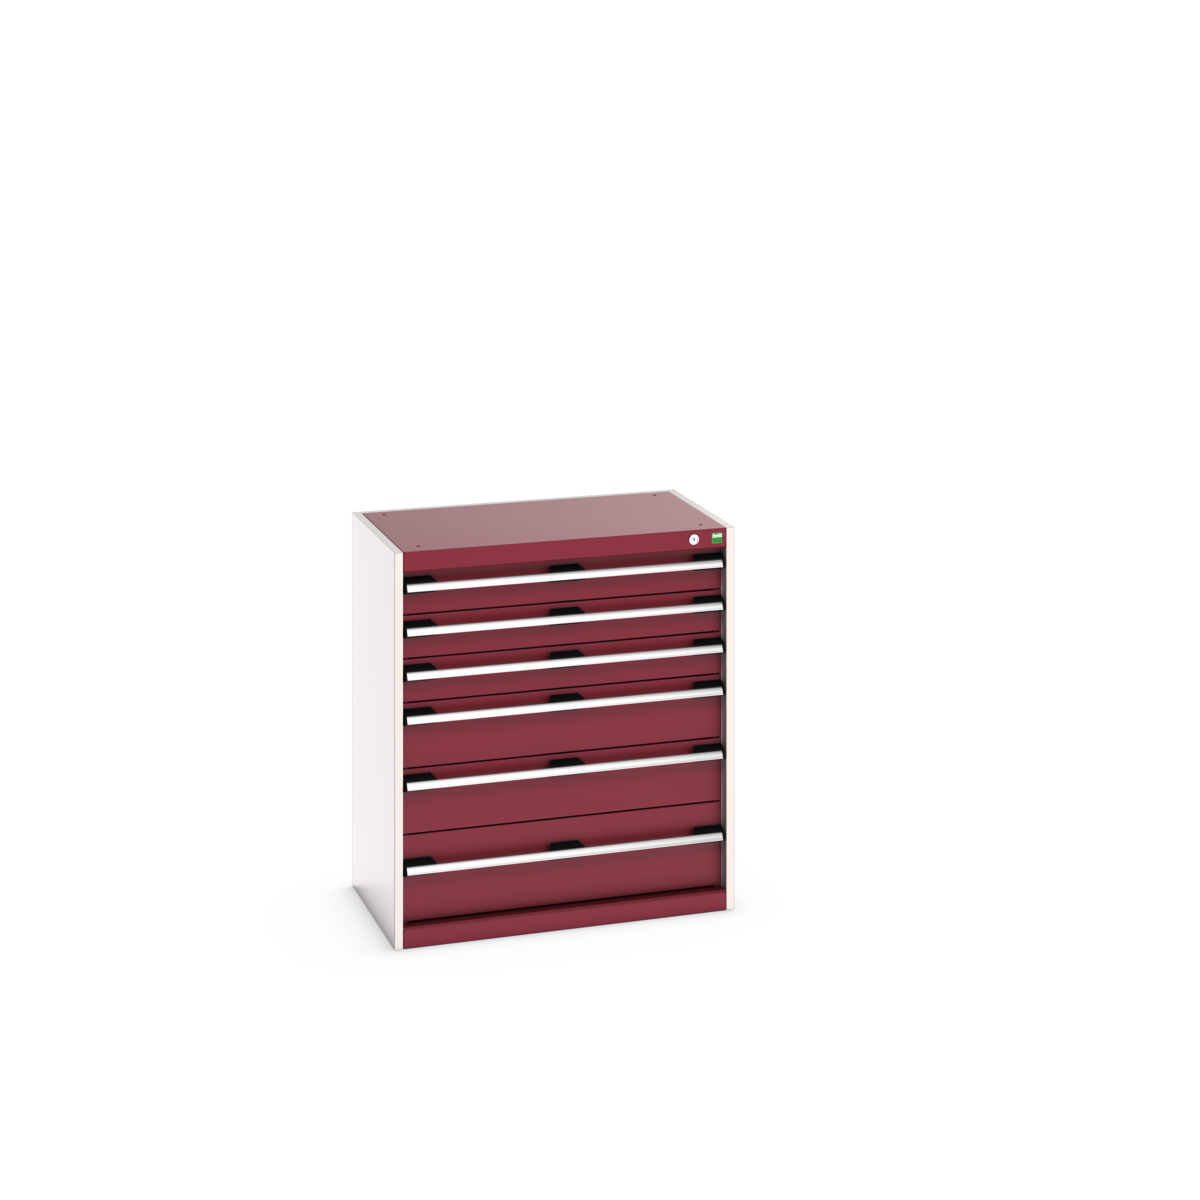 40012087.24V - cubio drawer cabinet